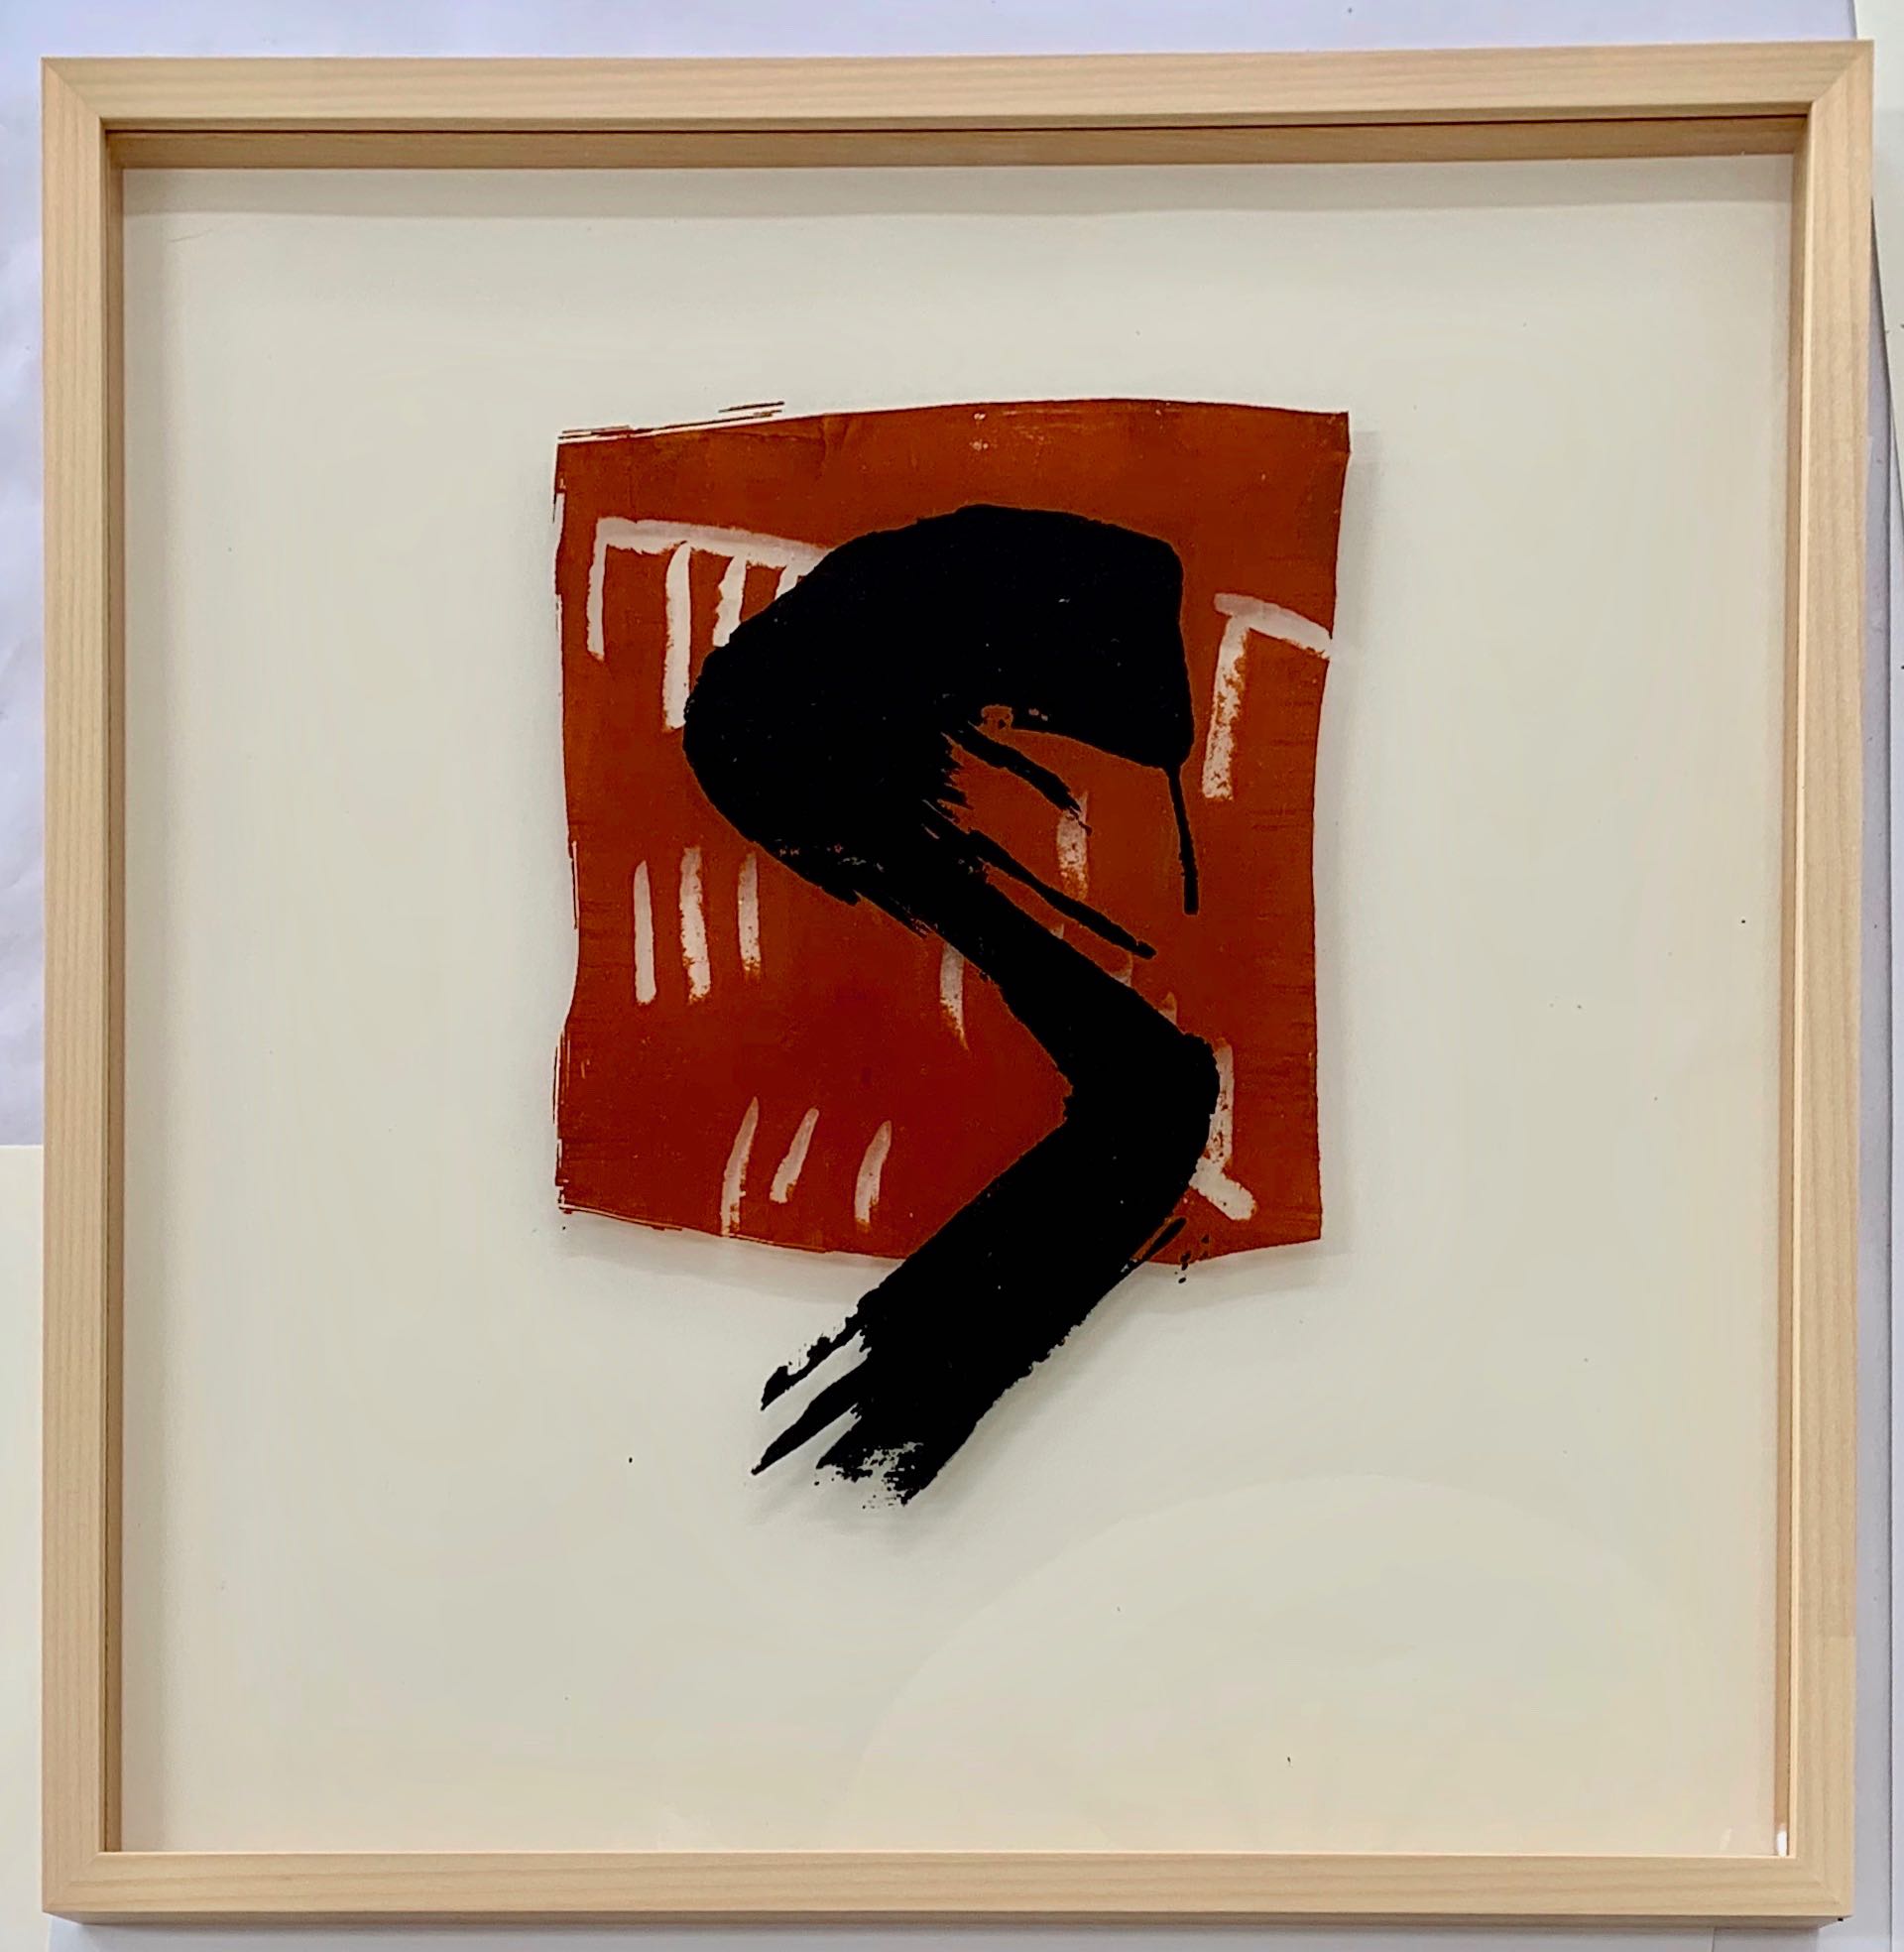 Swoosh braun, Siebdruck auf Acrylglas, 50 x 50 cm, gerahmt, 2019